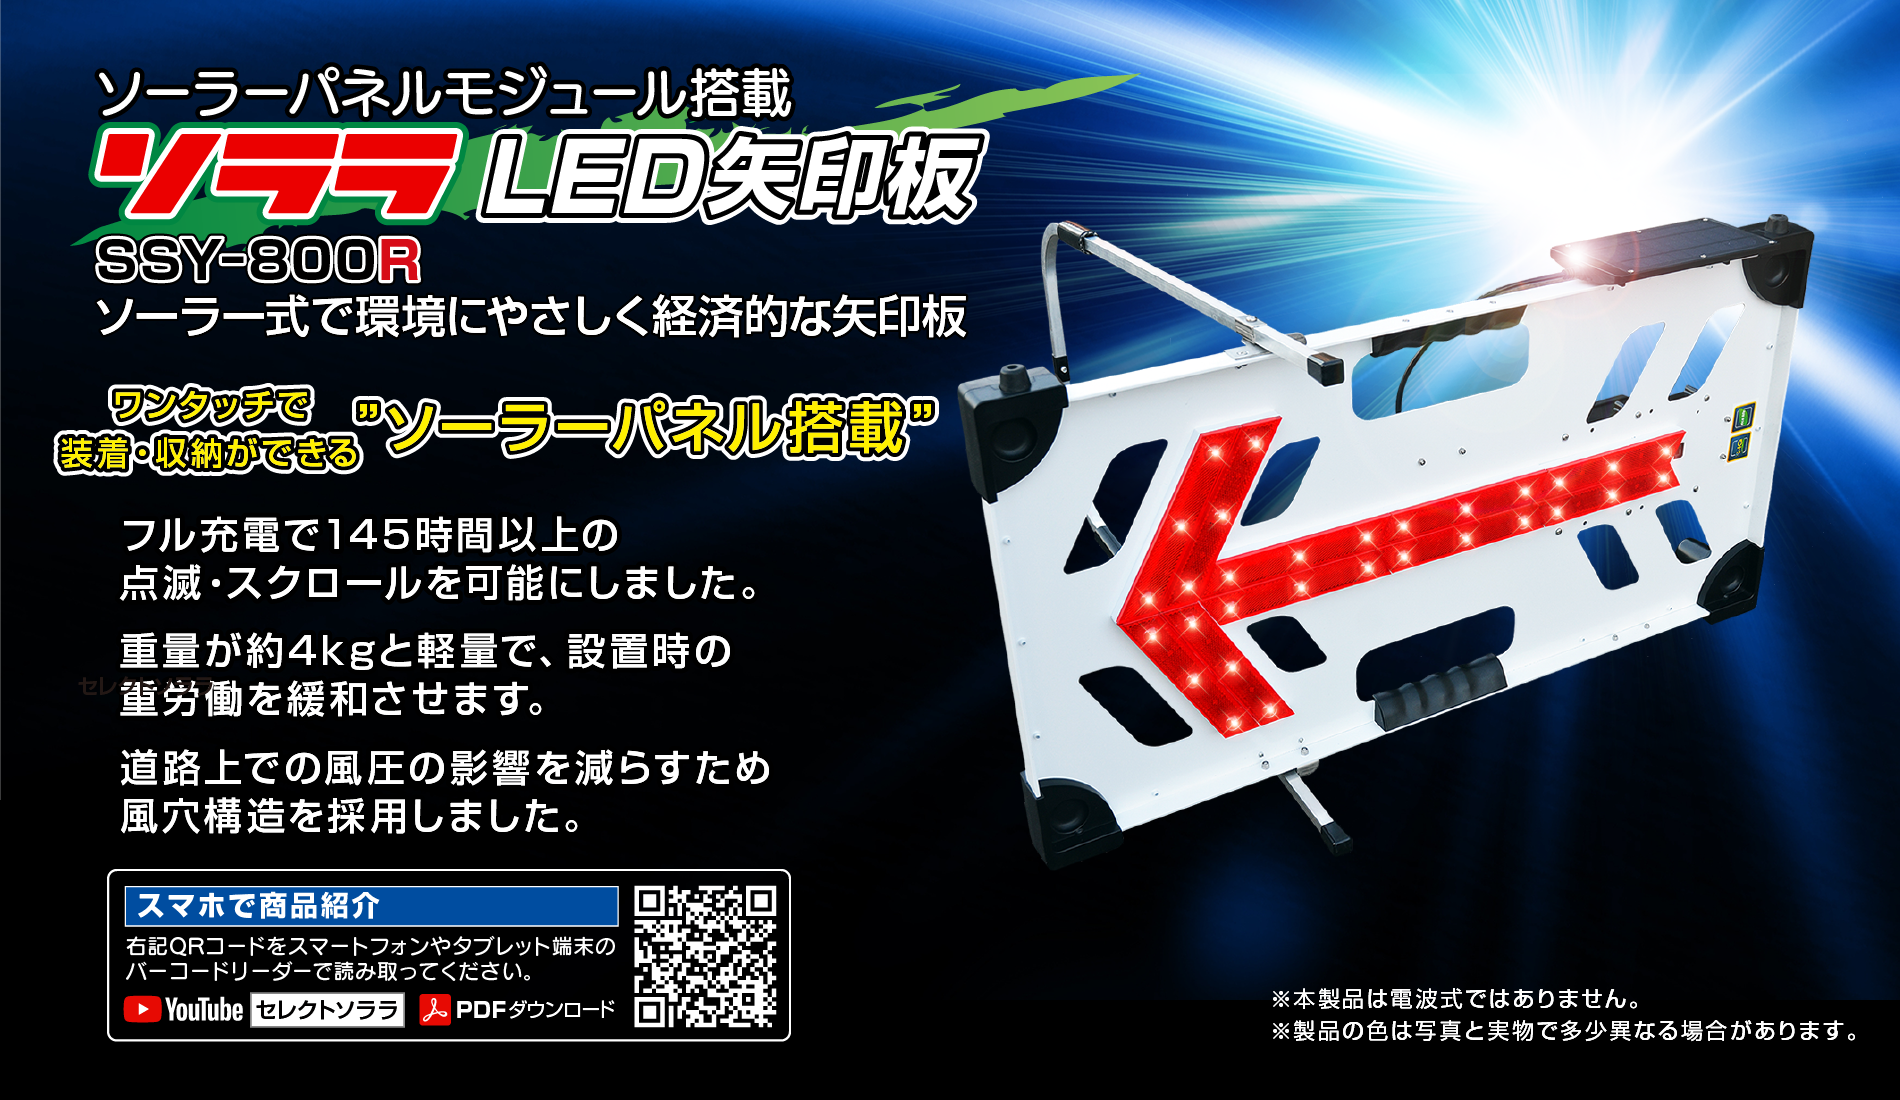 新作製品、世界最高品質人気! ウィンターソーラー式LED矢印板 壊れにくい矢印板 KAB-003 キタムラ産業